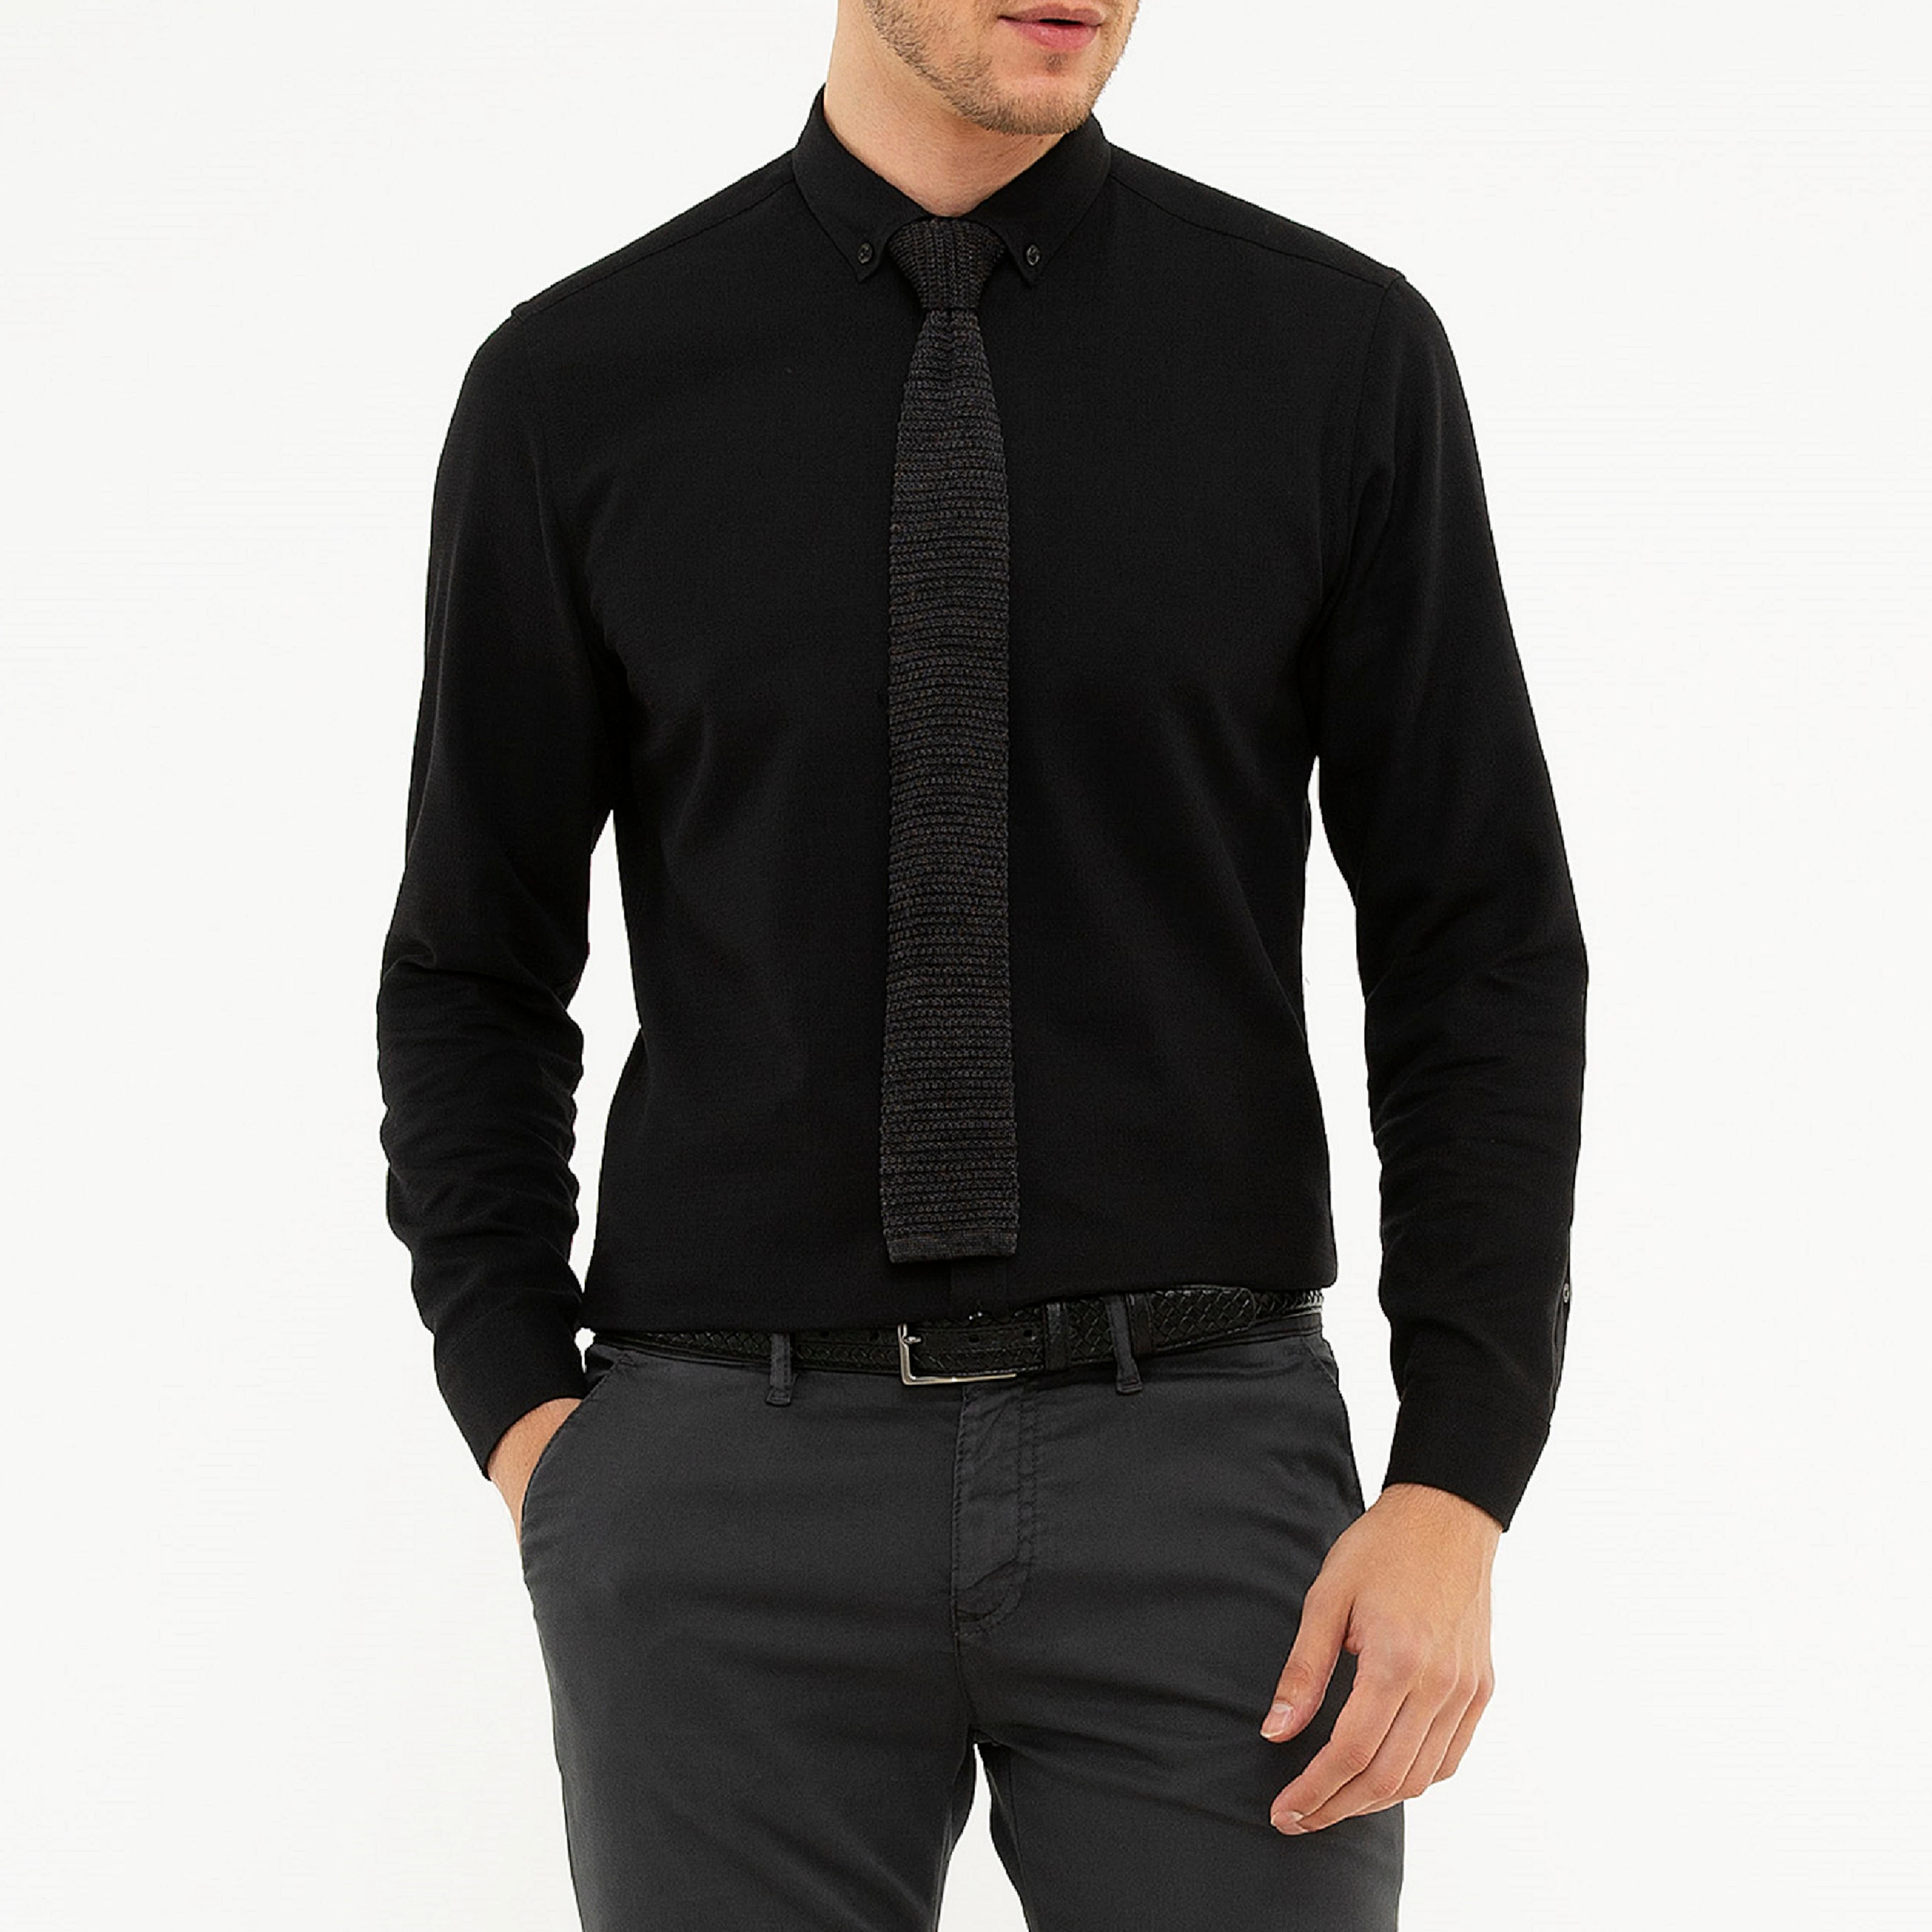 Camisas Negras Elegantes Para De Negocios 2021 De Calidad,Estilo Clásico,100 - Buy Fácil,Camisa,Camisa De Los Hombres Product on Alibaba.com